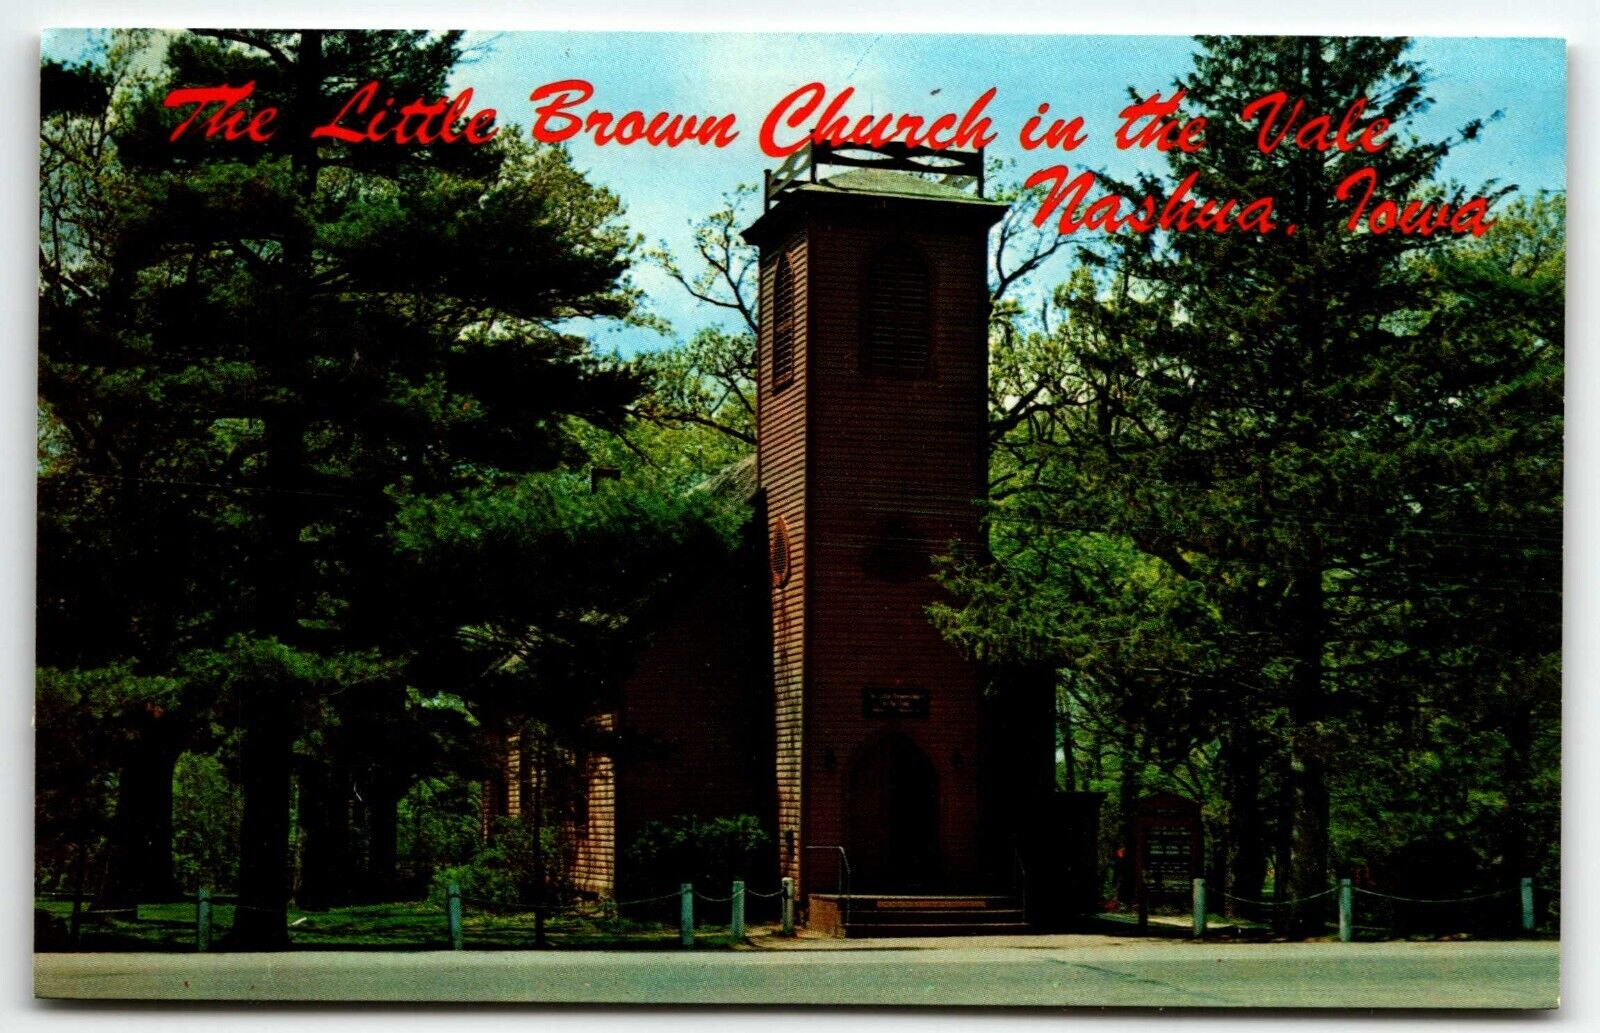 Little Brown Church in the Vale Chrome Postcard Nashua Iowa IA UNP